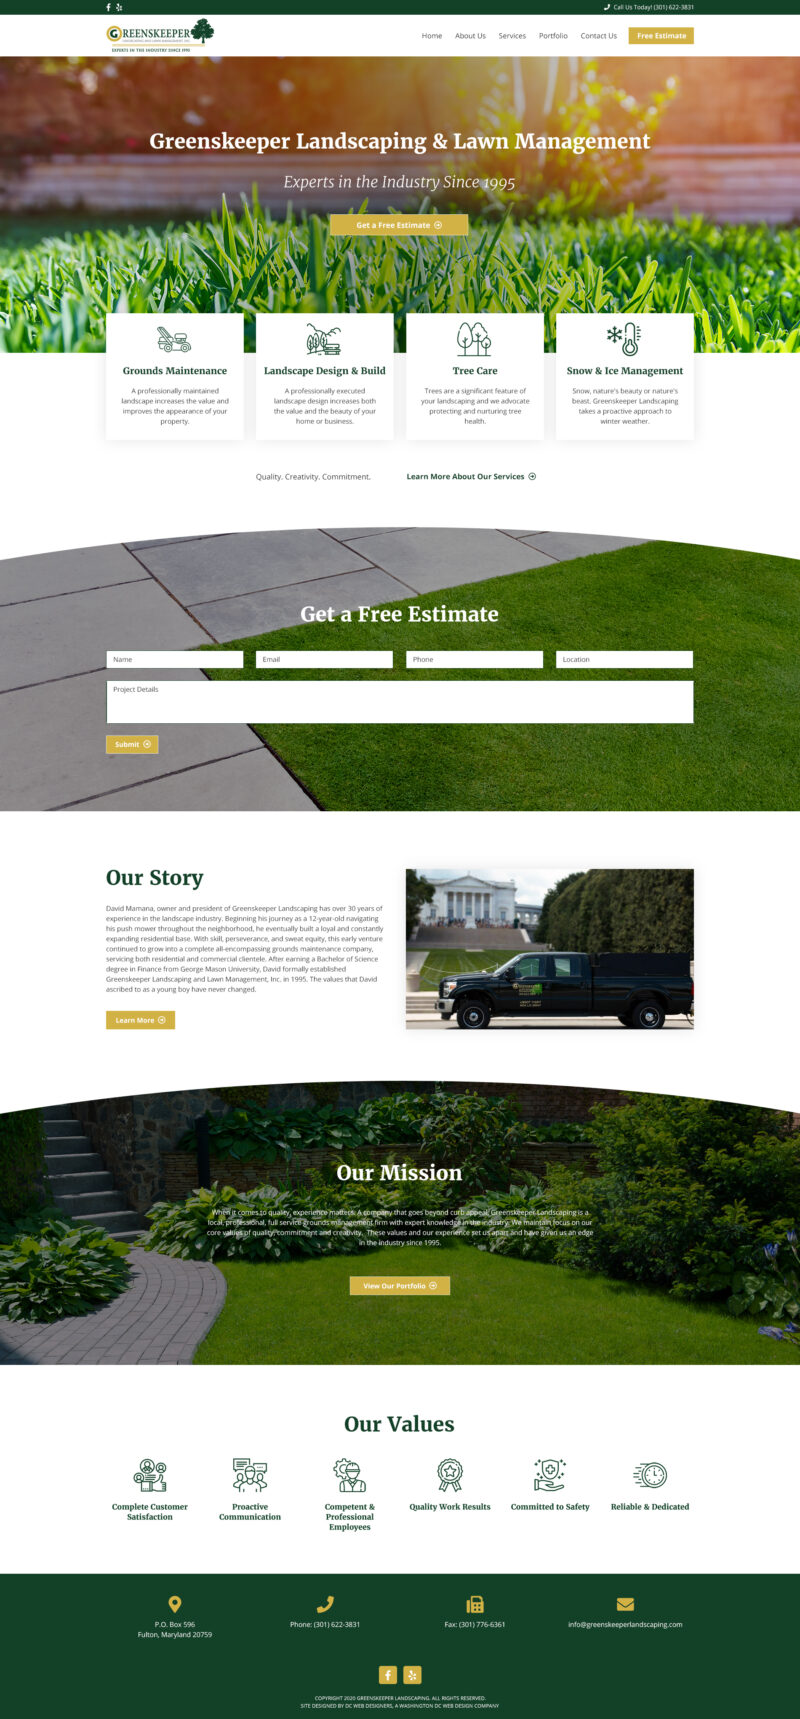 Landscaping Website Design